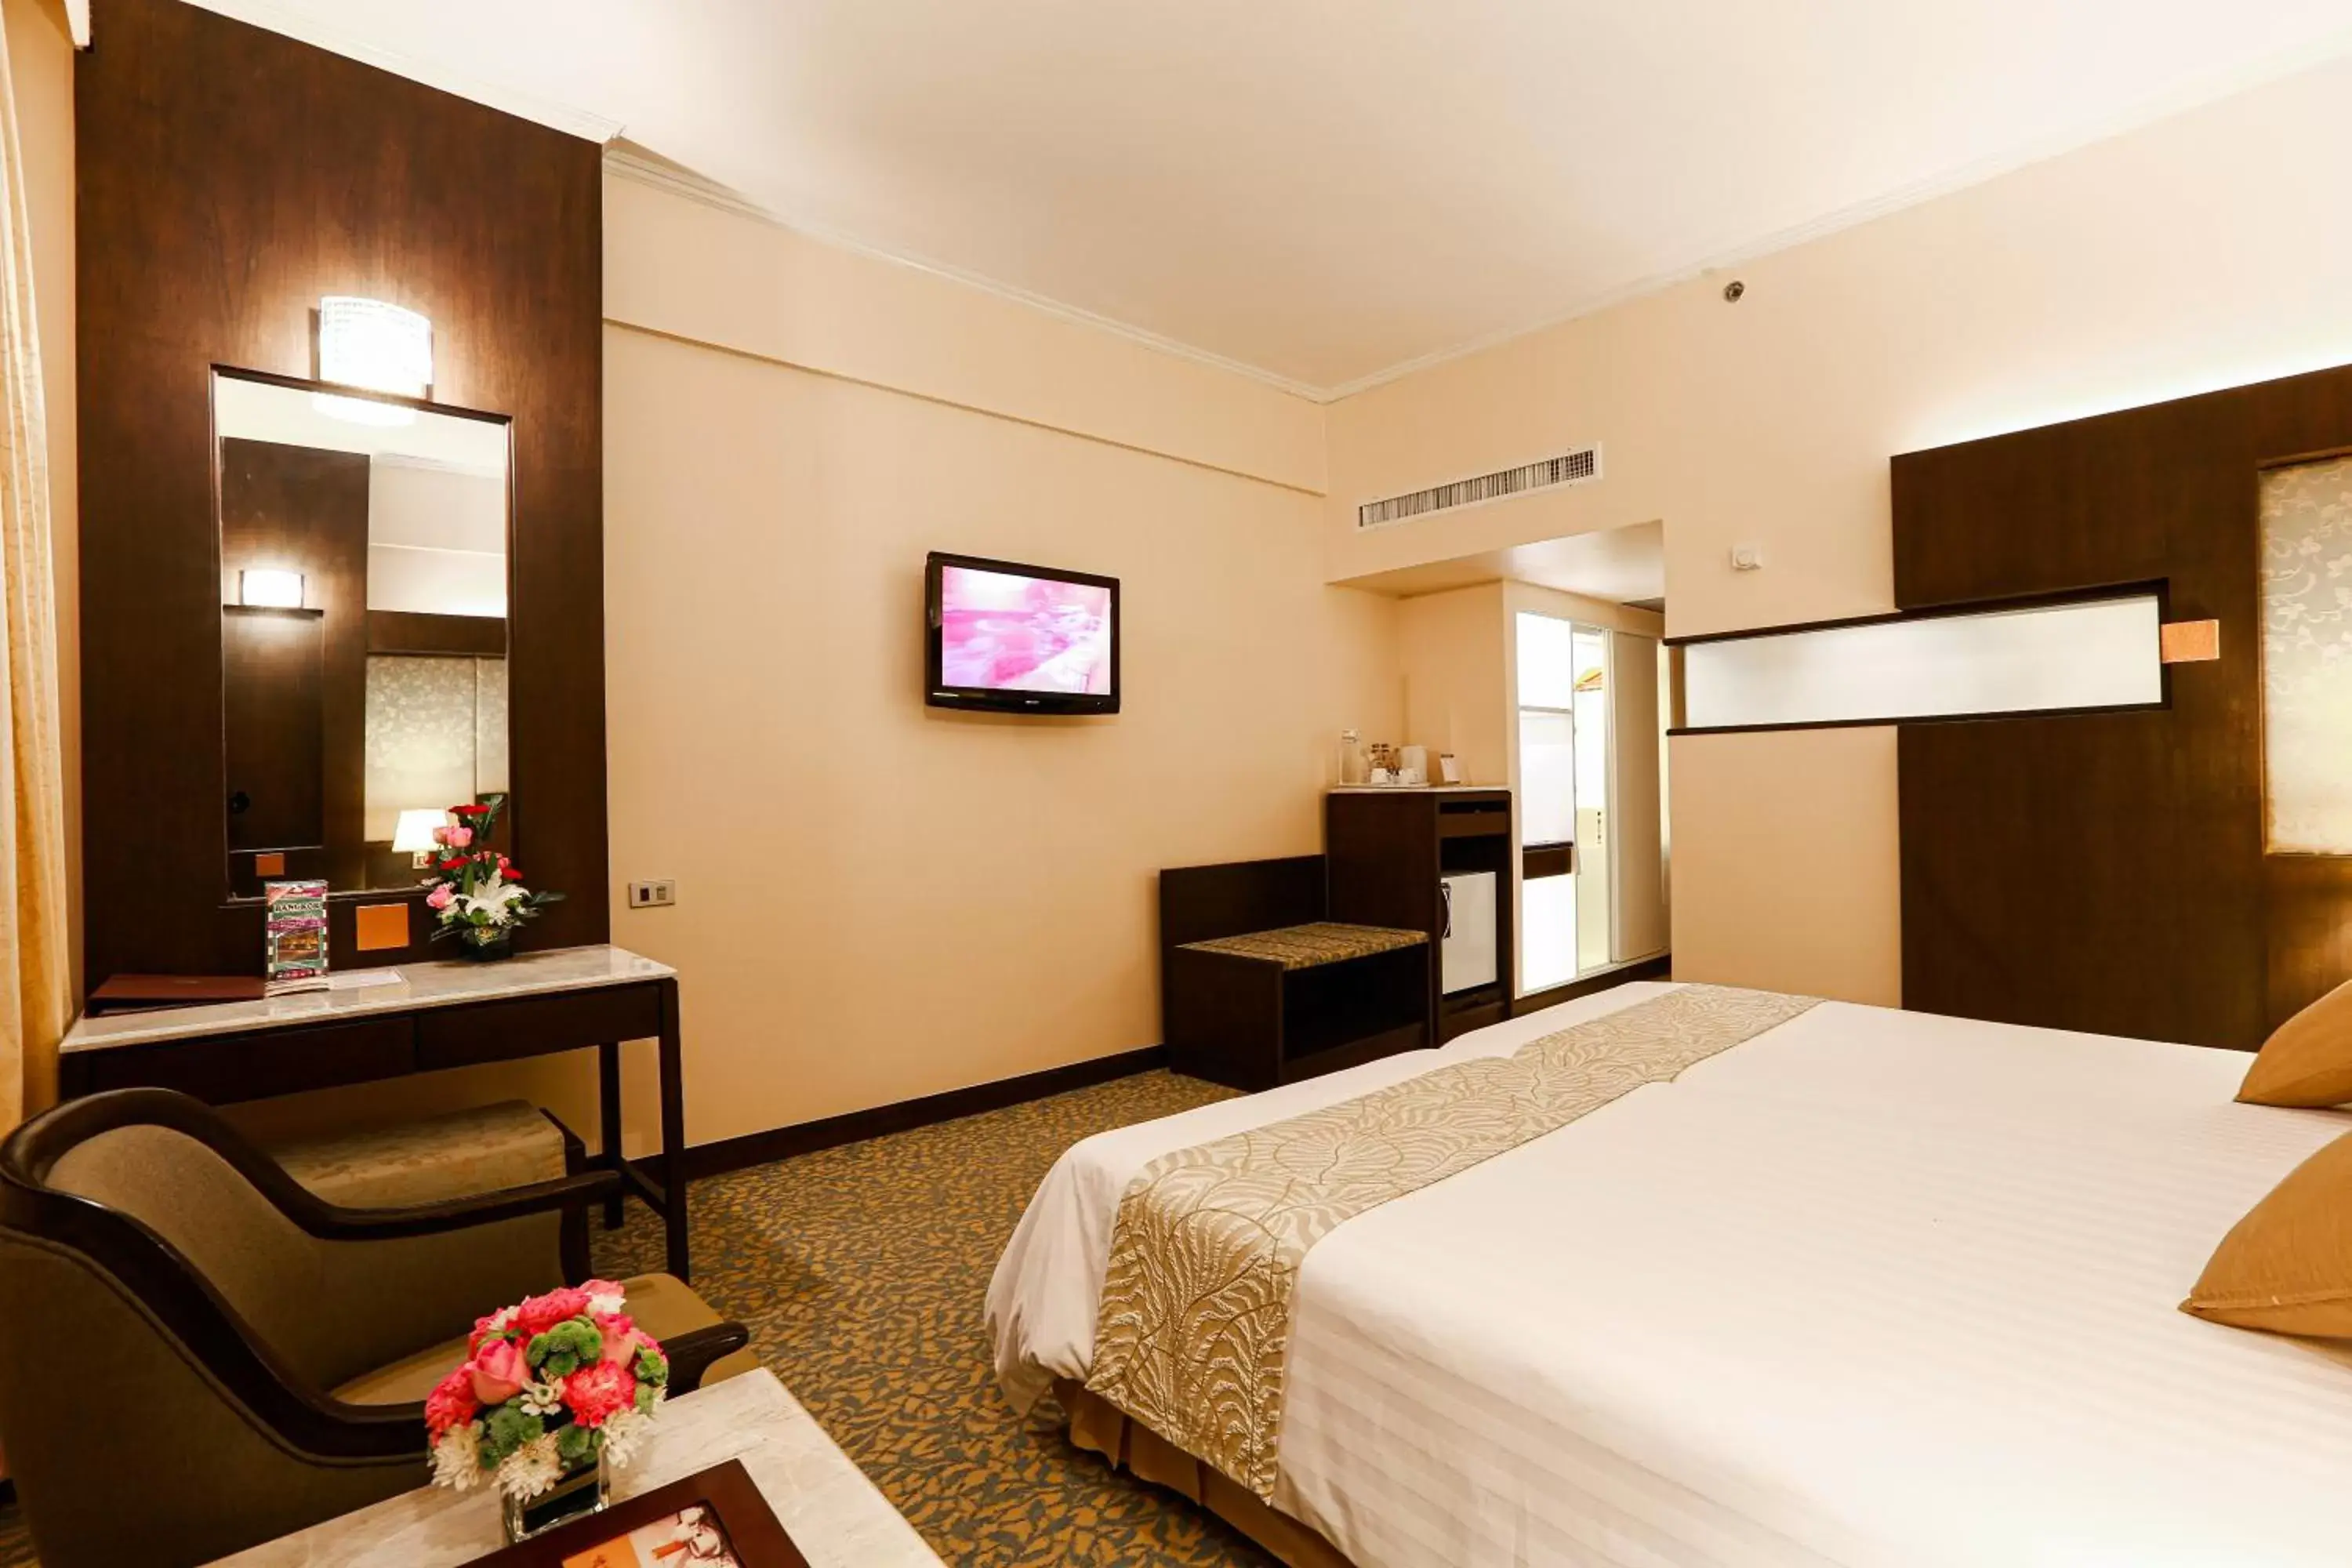 Bedroom in Asia Hotel Bangkok